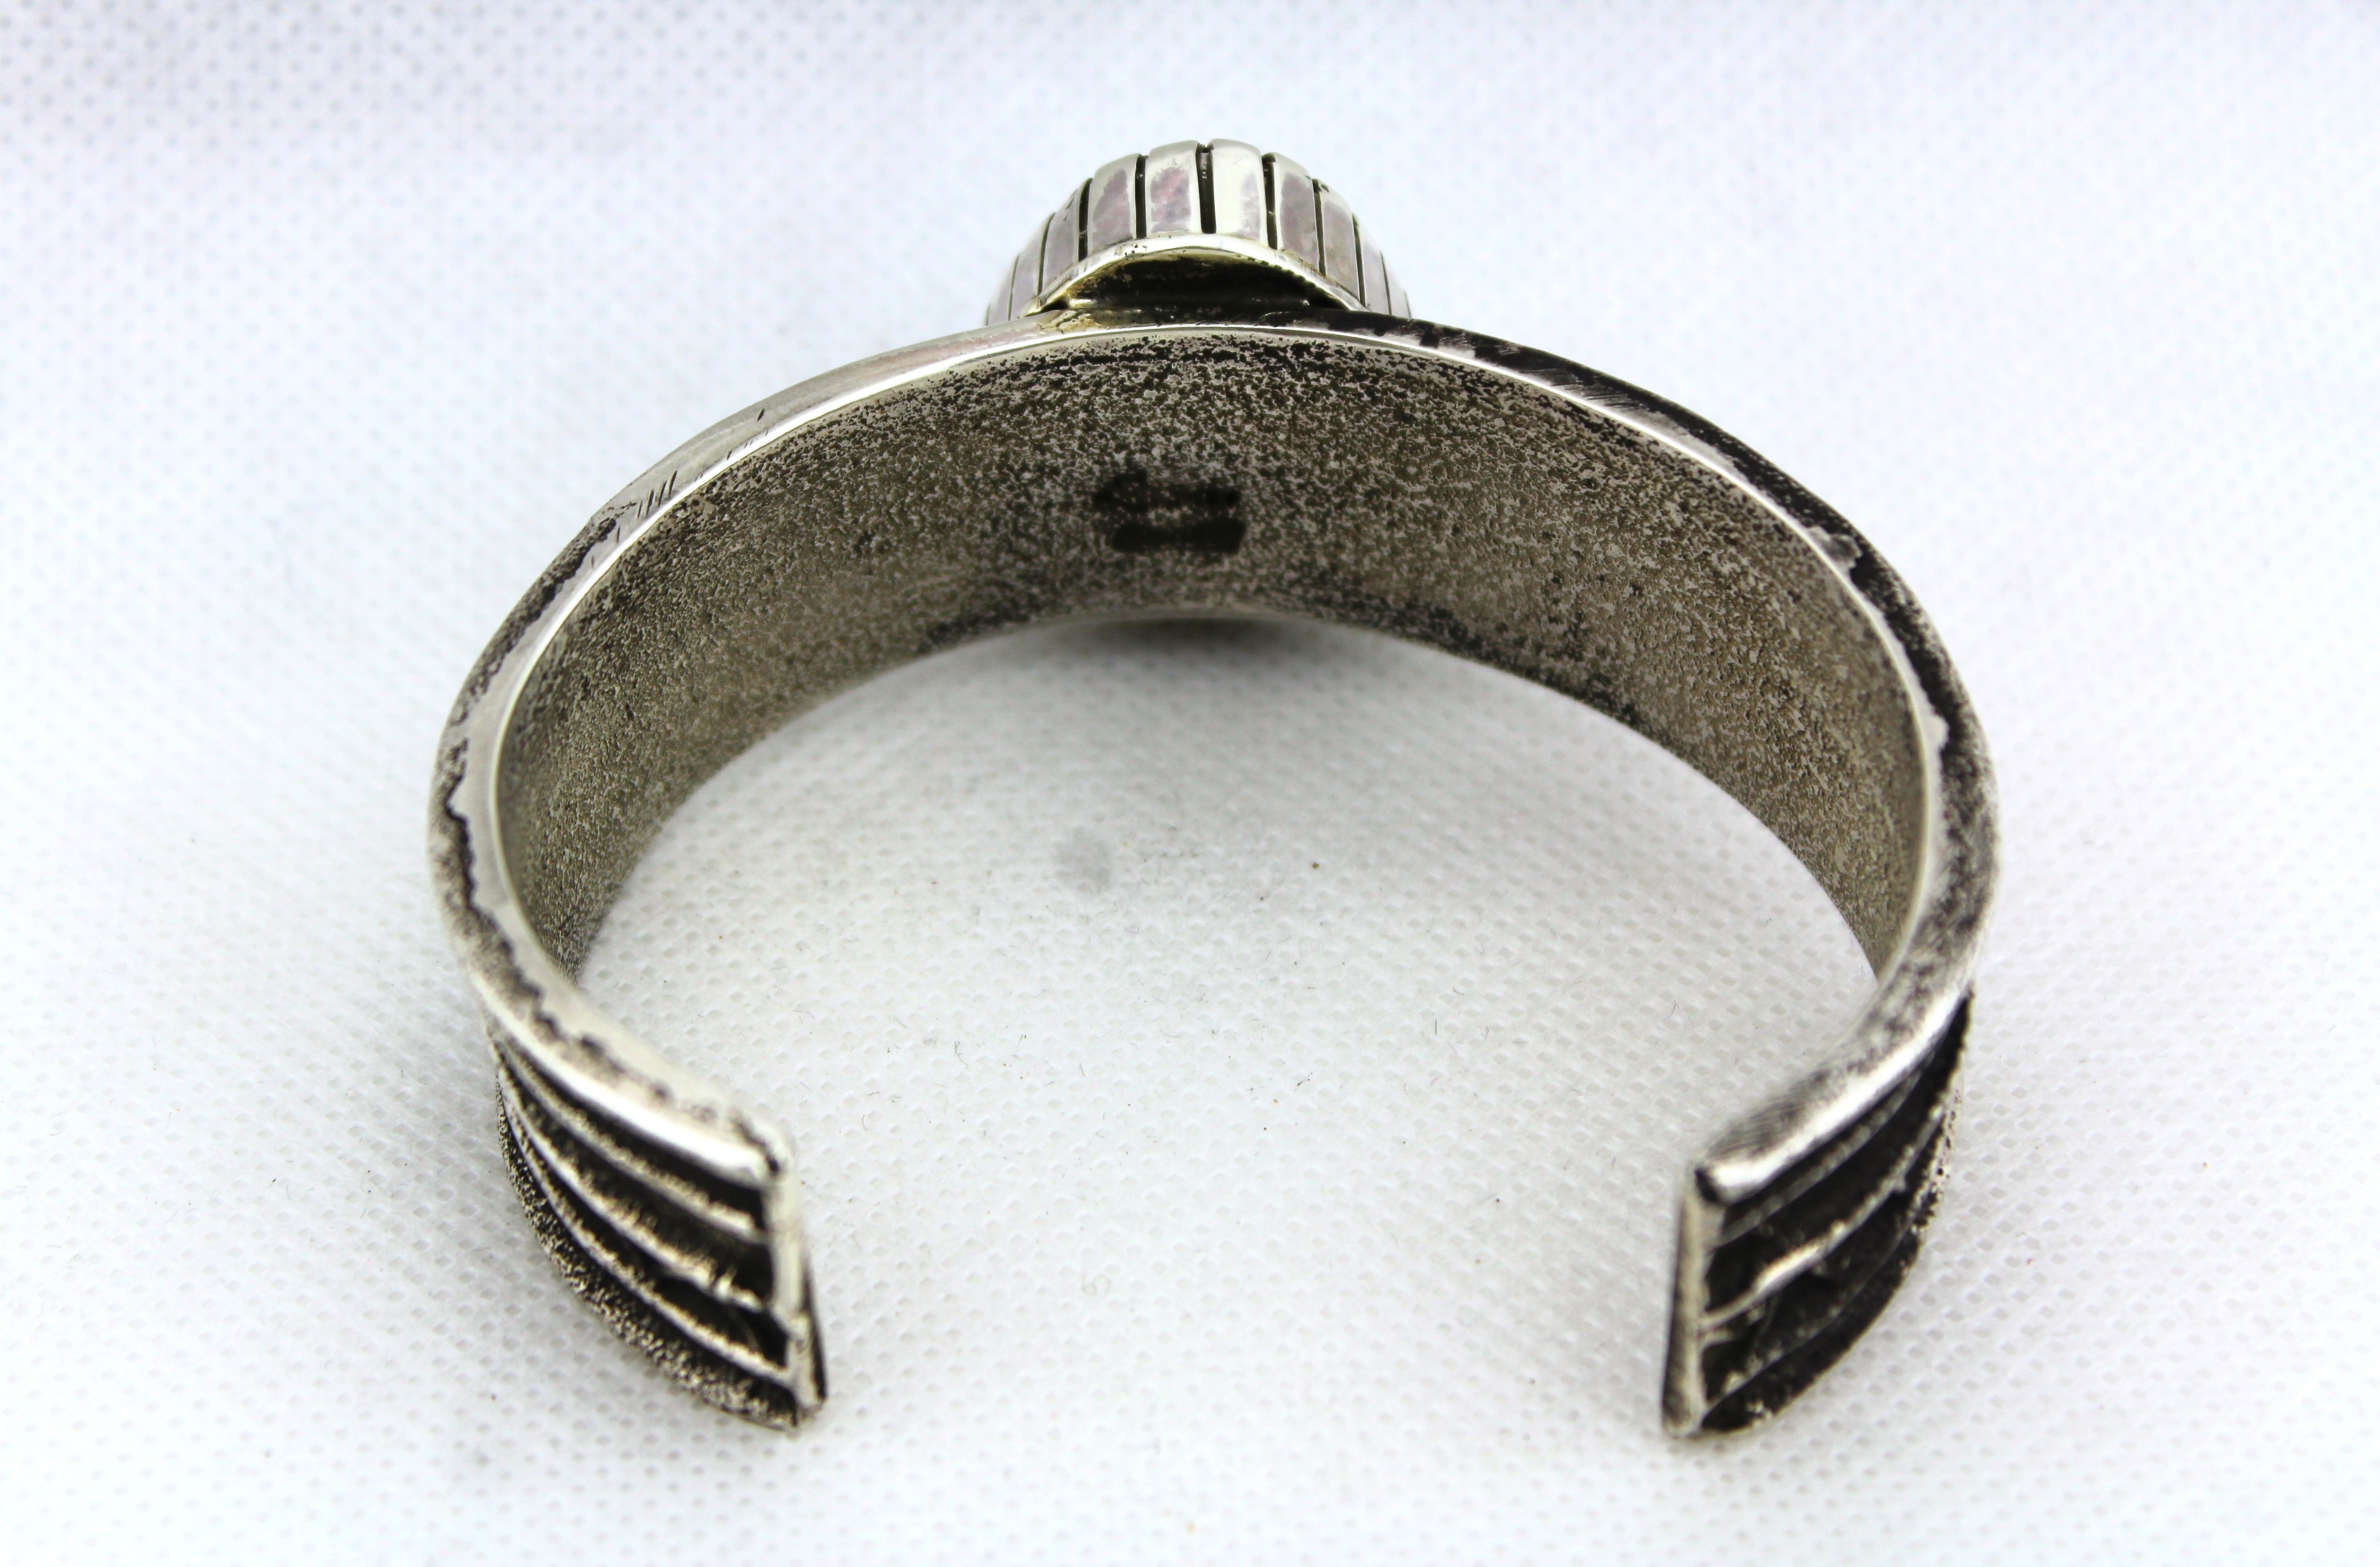 Tufa Cast Sterling Silver Bracelet